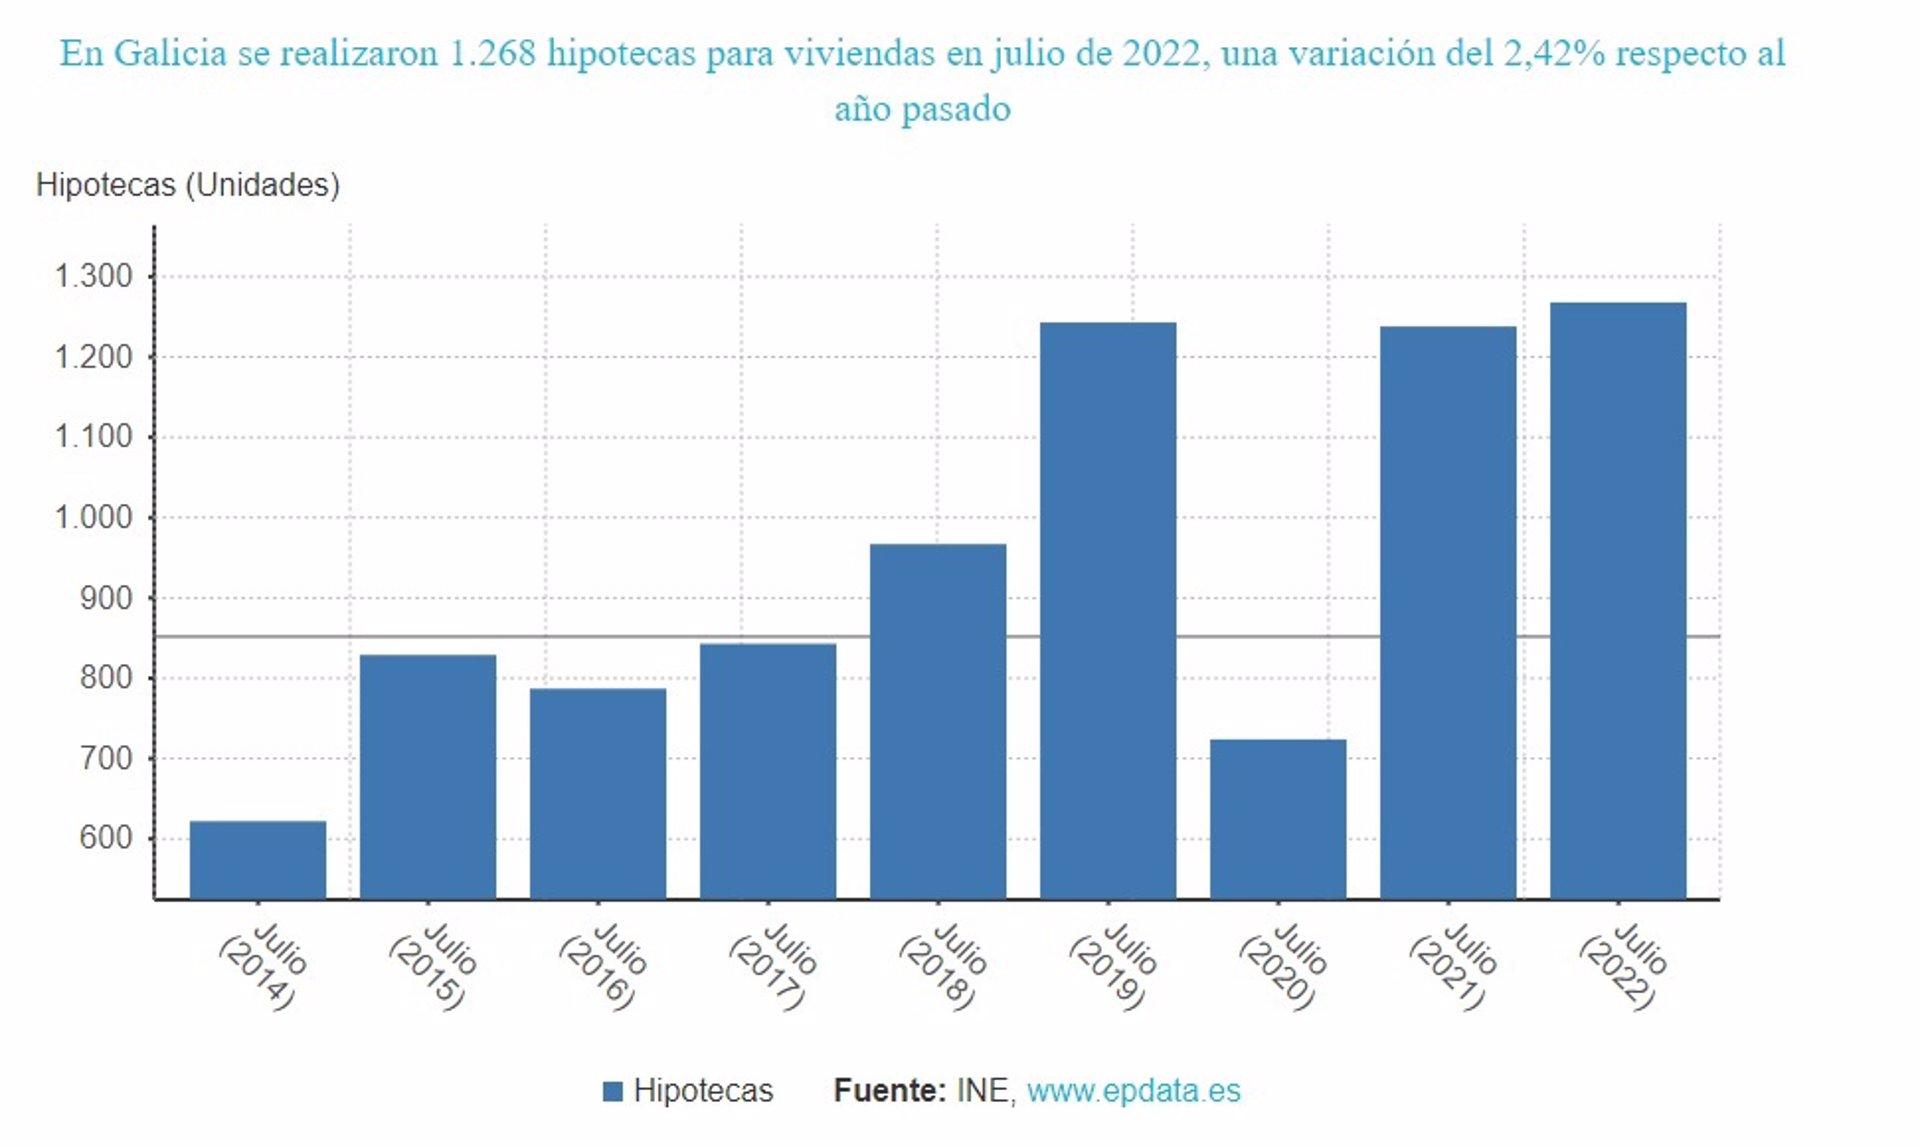 28/09/2022 Evolución del número de hipotecas sobre viviendas en Galicia
ESPAÑA EUROPA GALICIA ECONOMIA
EPDATA